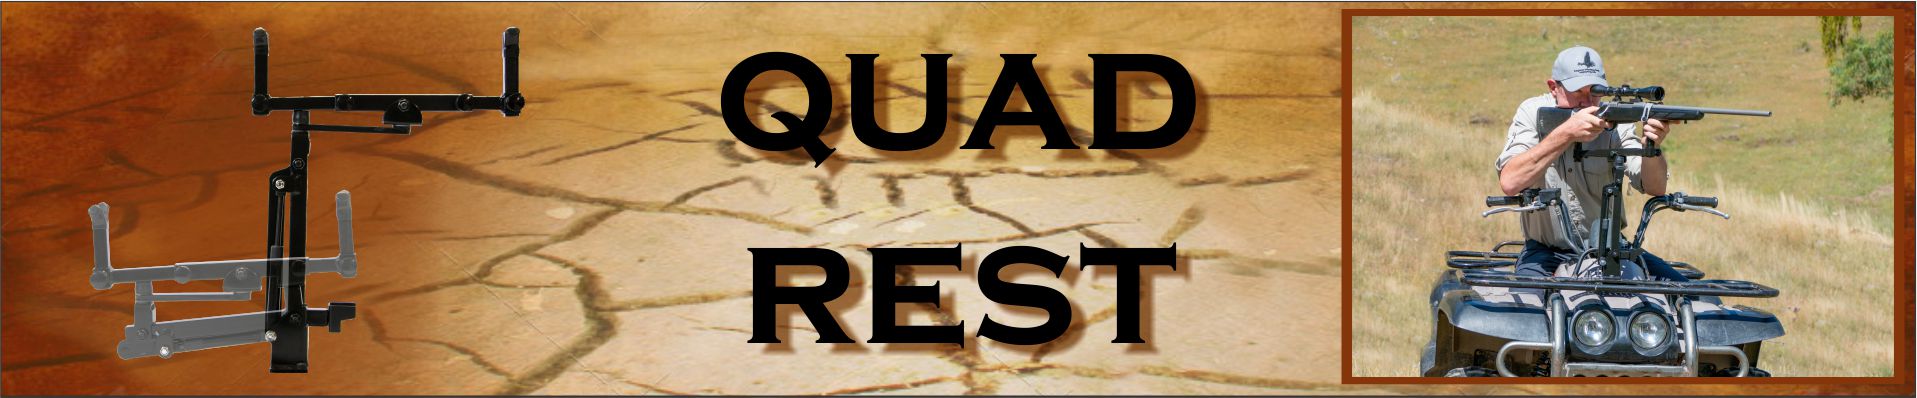 quad-rest-banner-website